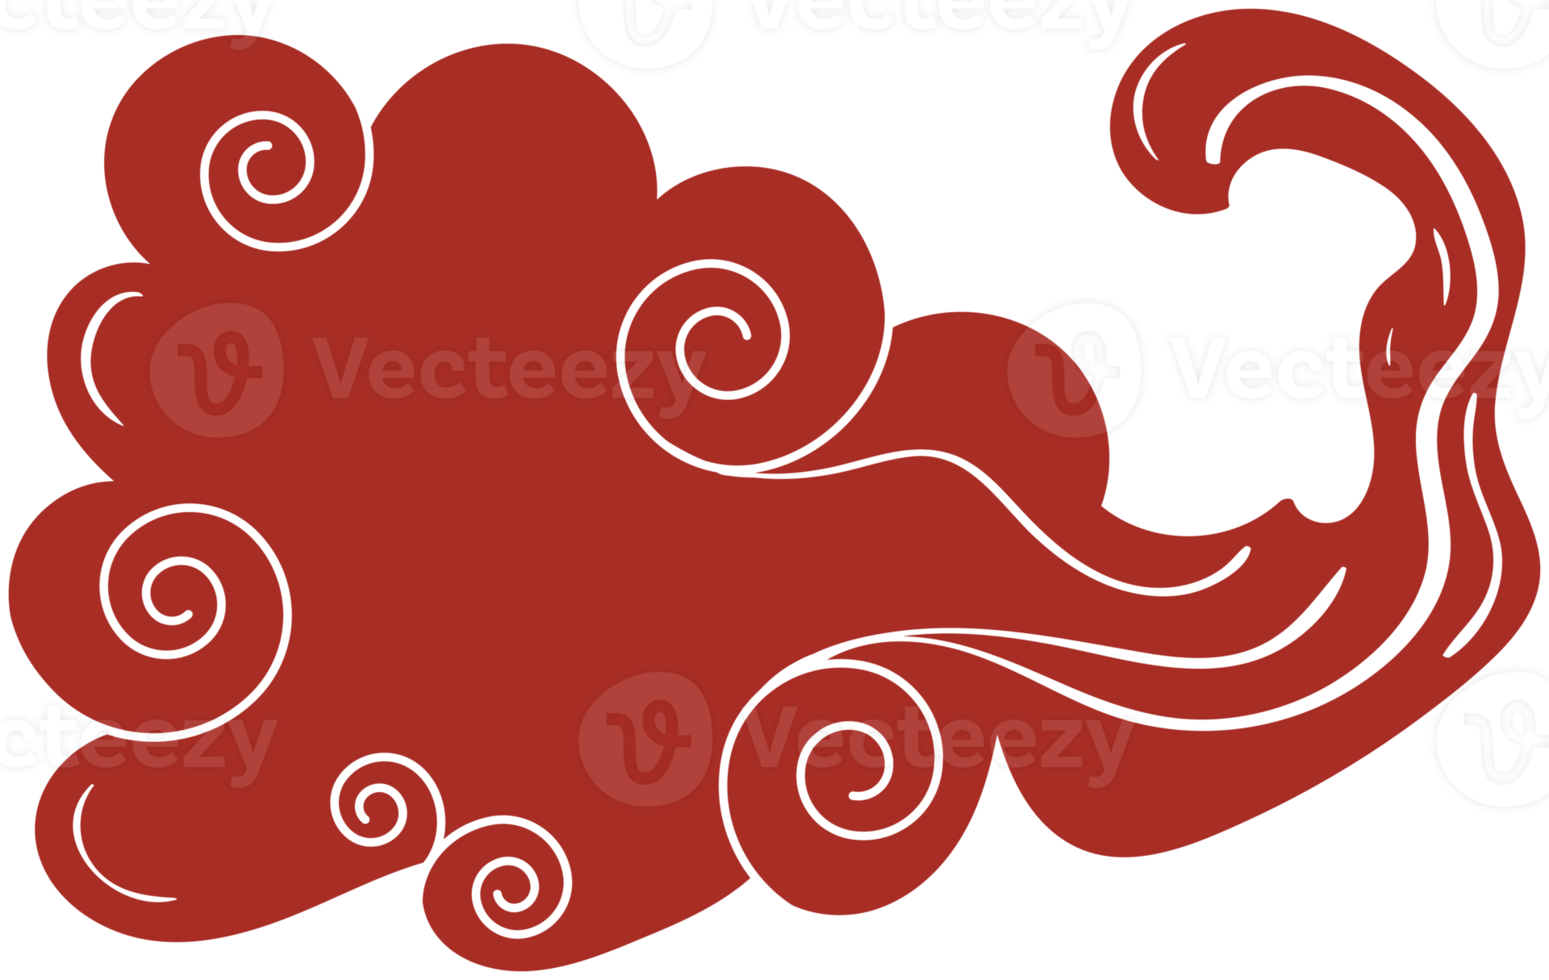 nuvem chinesa. elemento de design vermelho e branco curvo tradicional  13760961 PNG